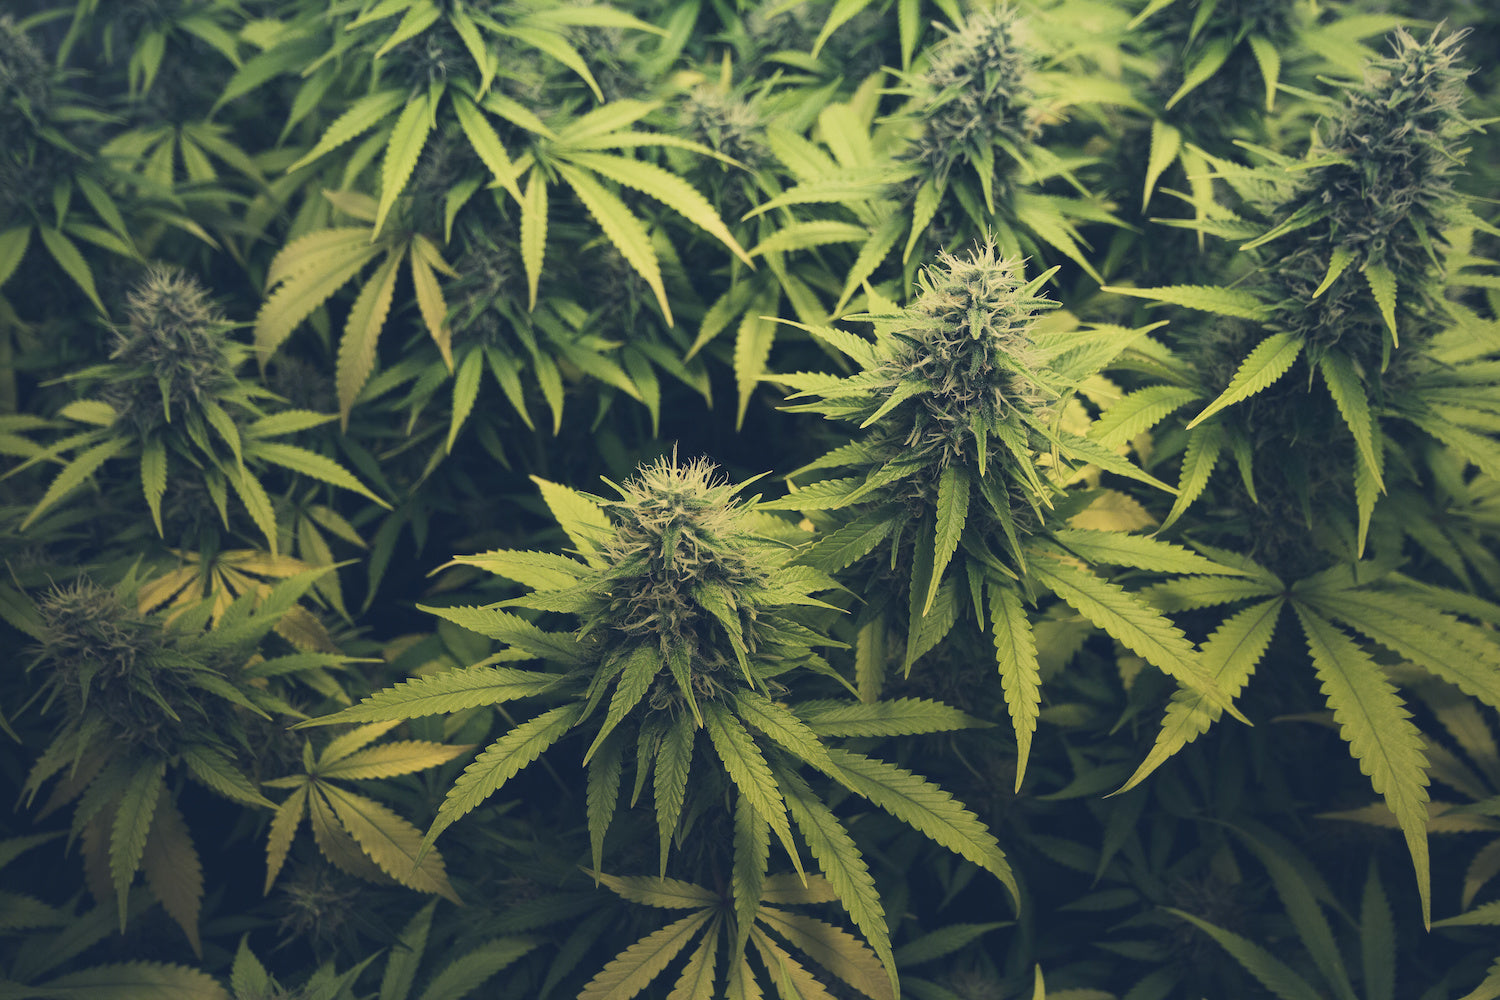 Grow cannabis